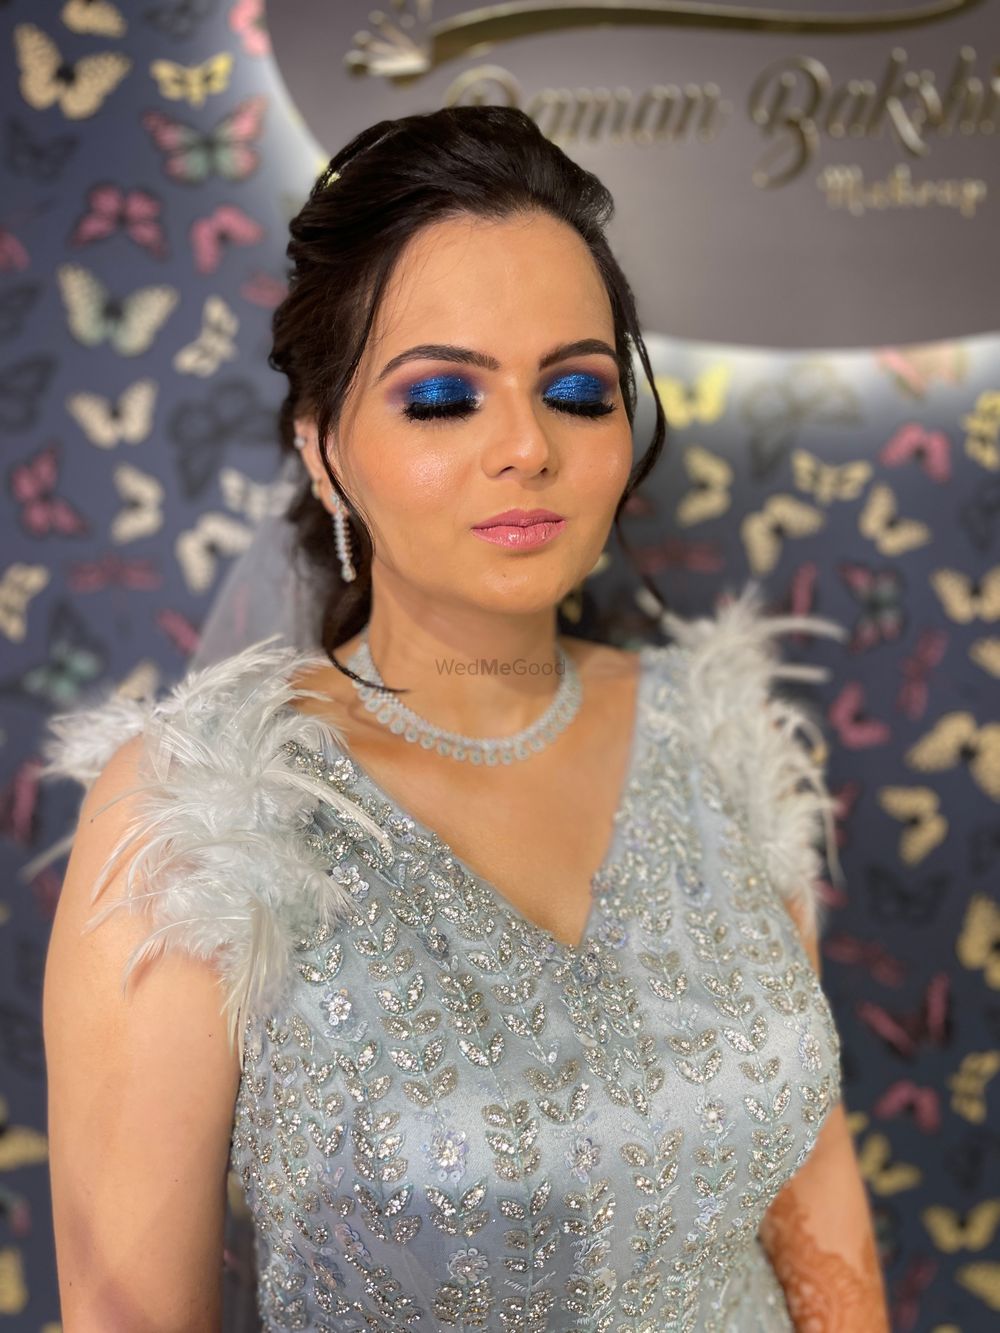 Photo By Raman Bakshi Makeup Artist - Bridal Makeup